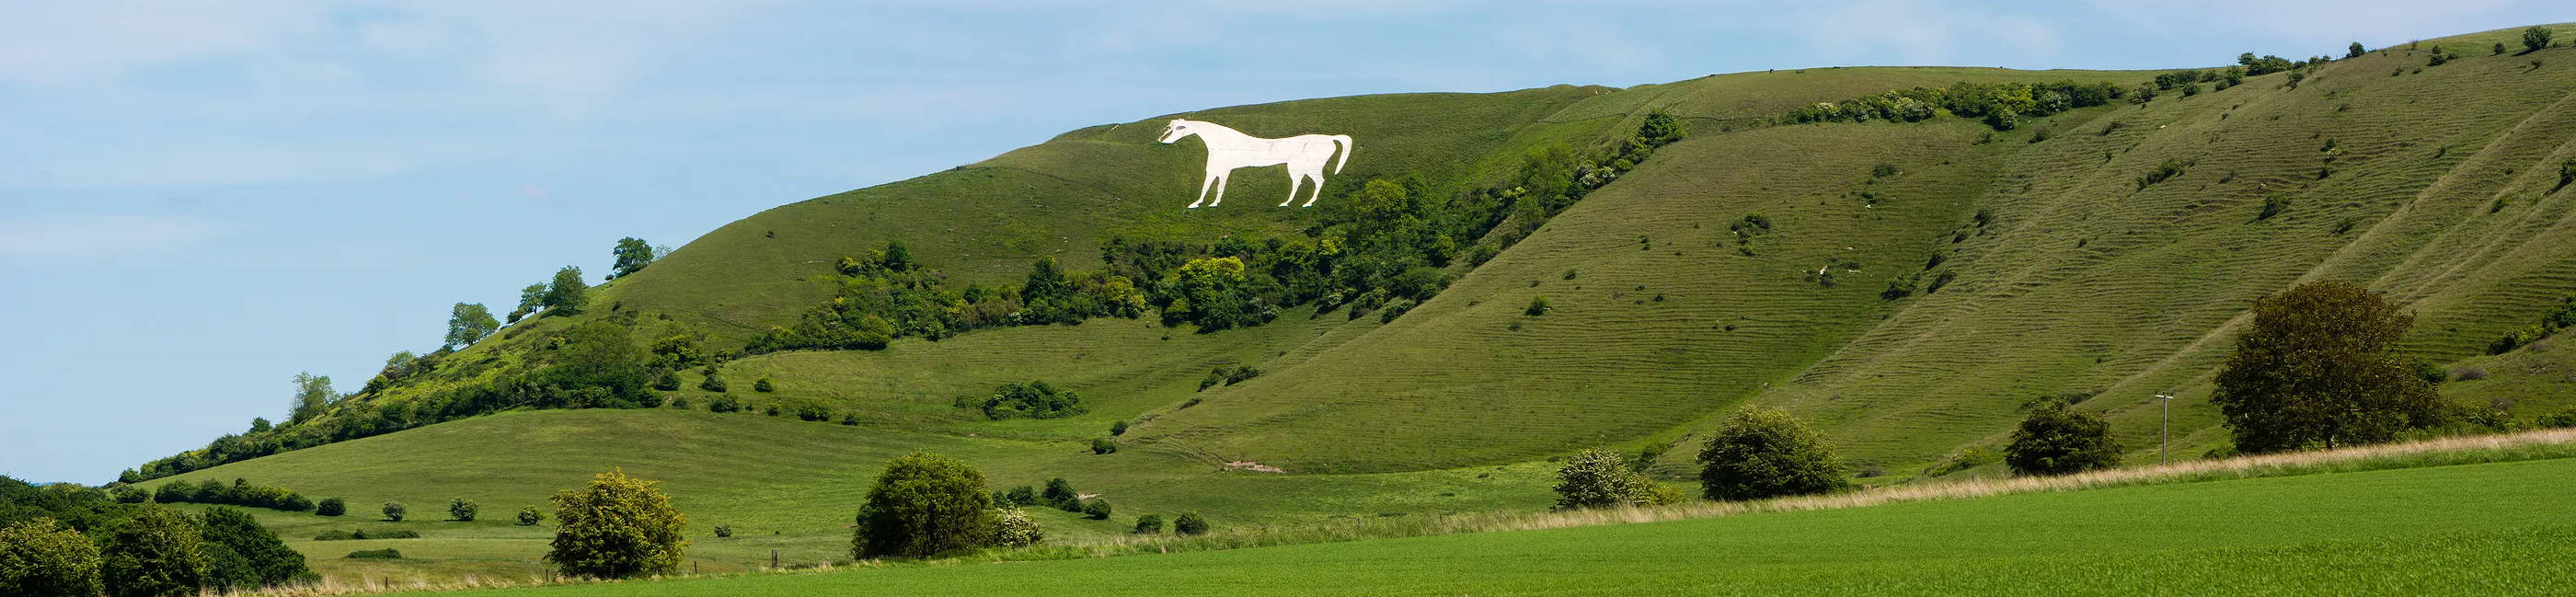 Westbury White Horse in Wiltshire